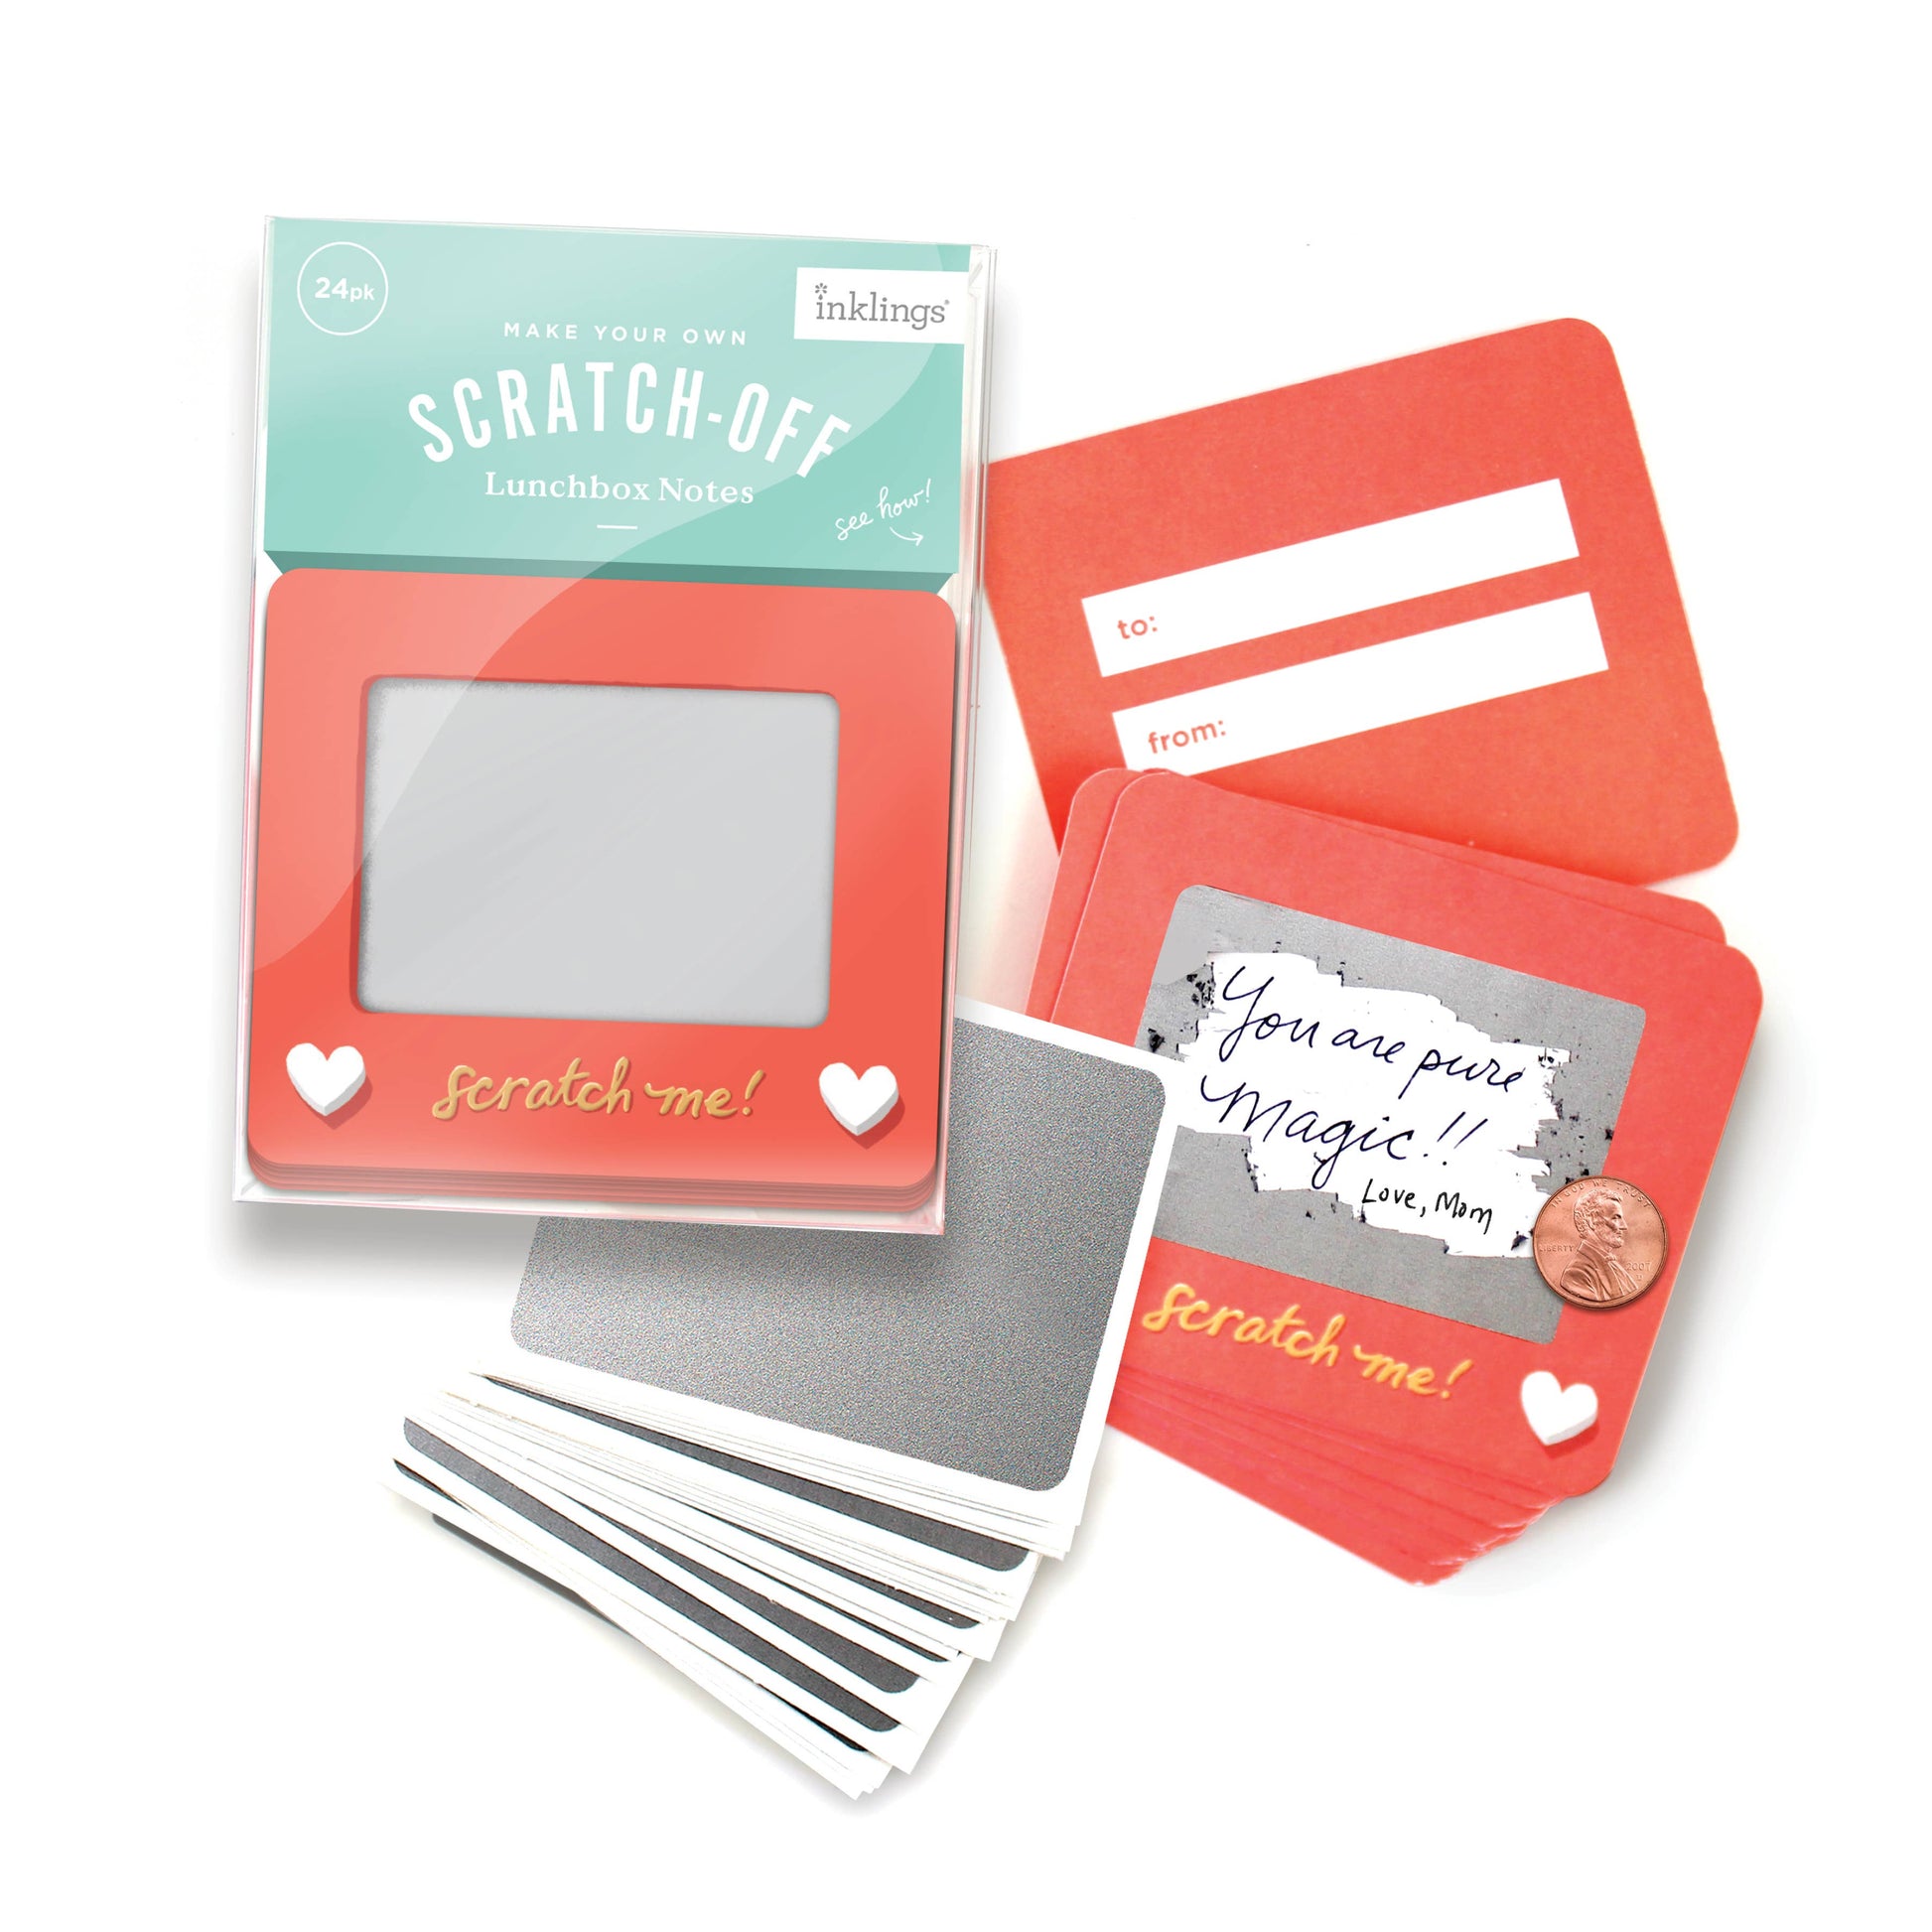 Scratch-a-Sketch scratch off notecards, fun lunchbox note cards